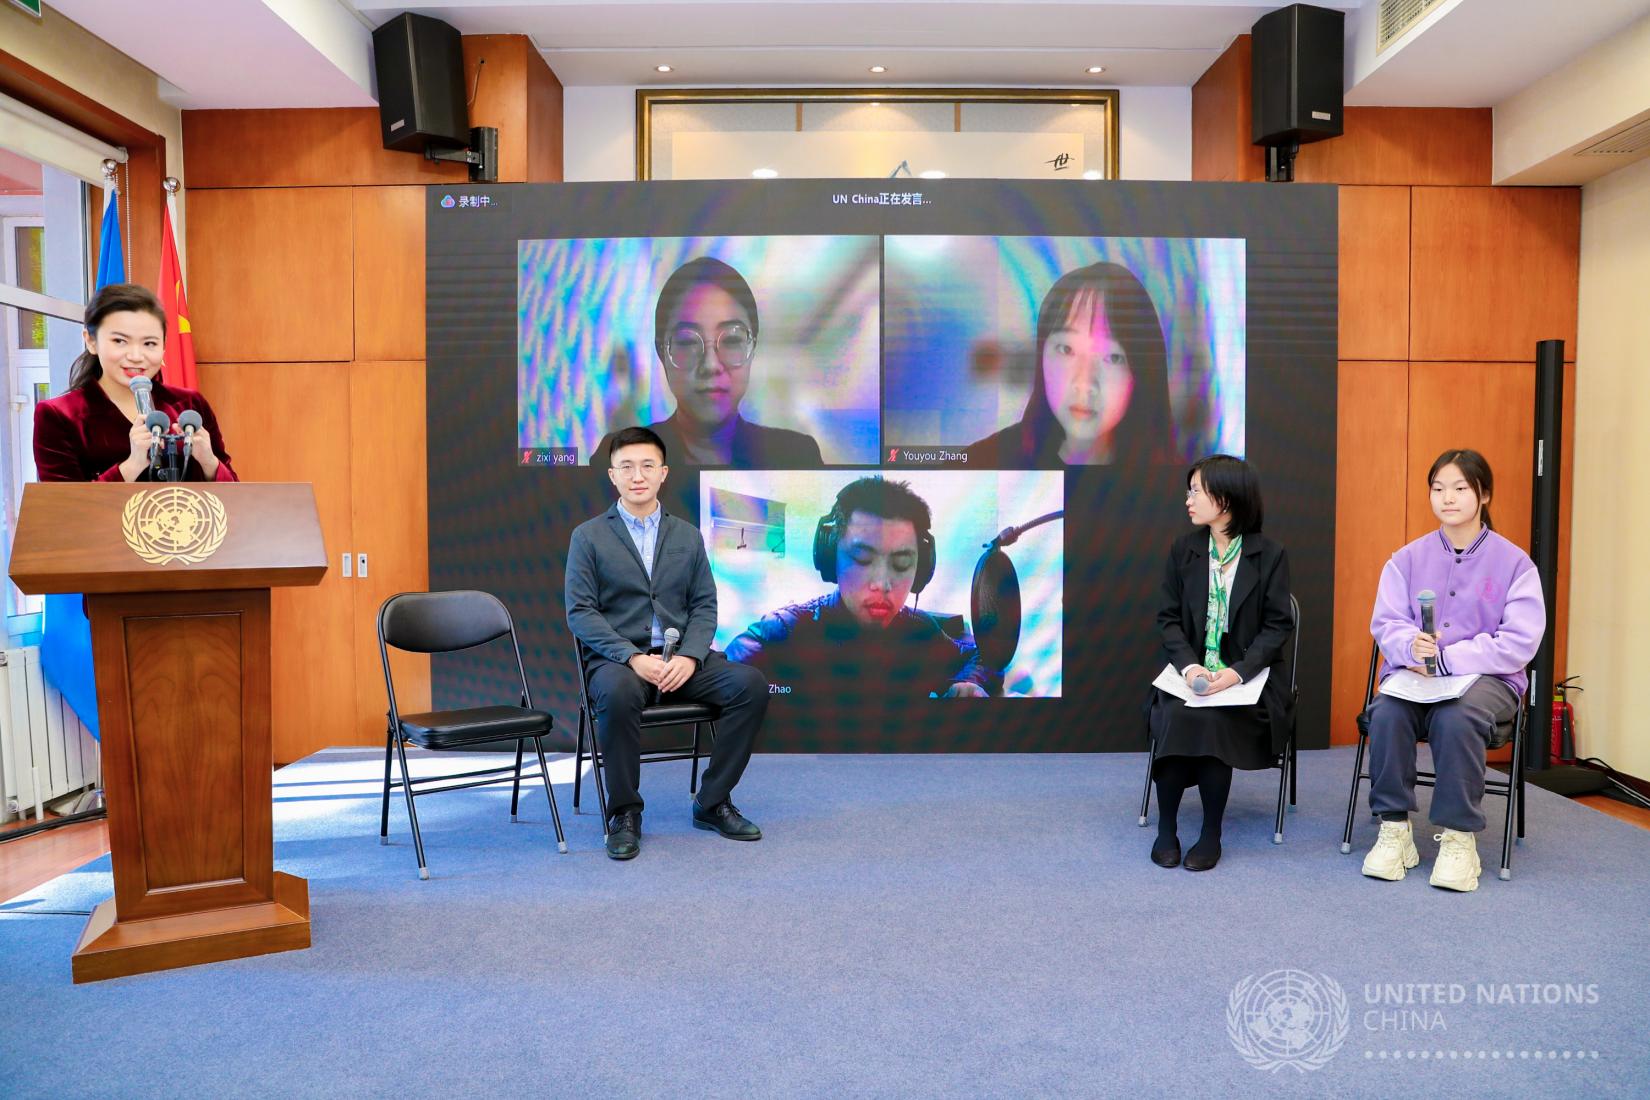 联合国儿童基金会青年倡导者赵晨和其他与会嘉宾